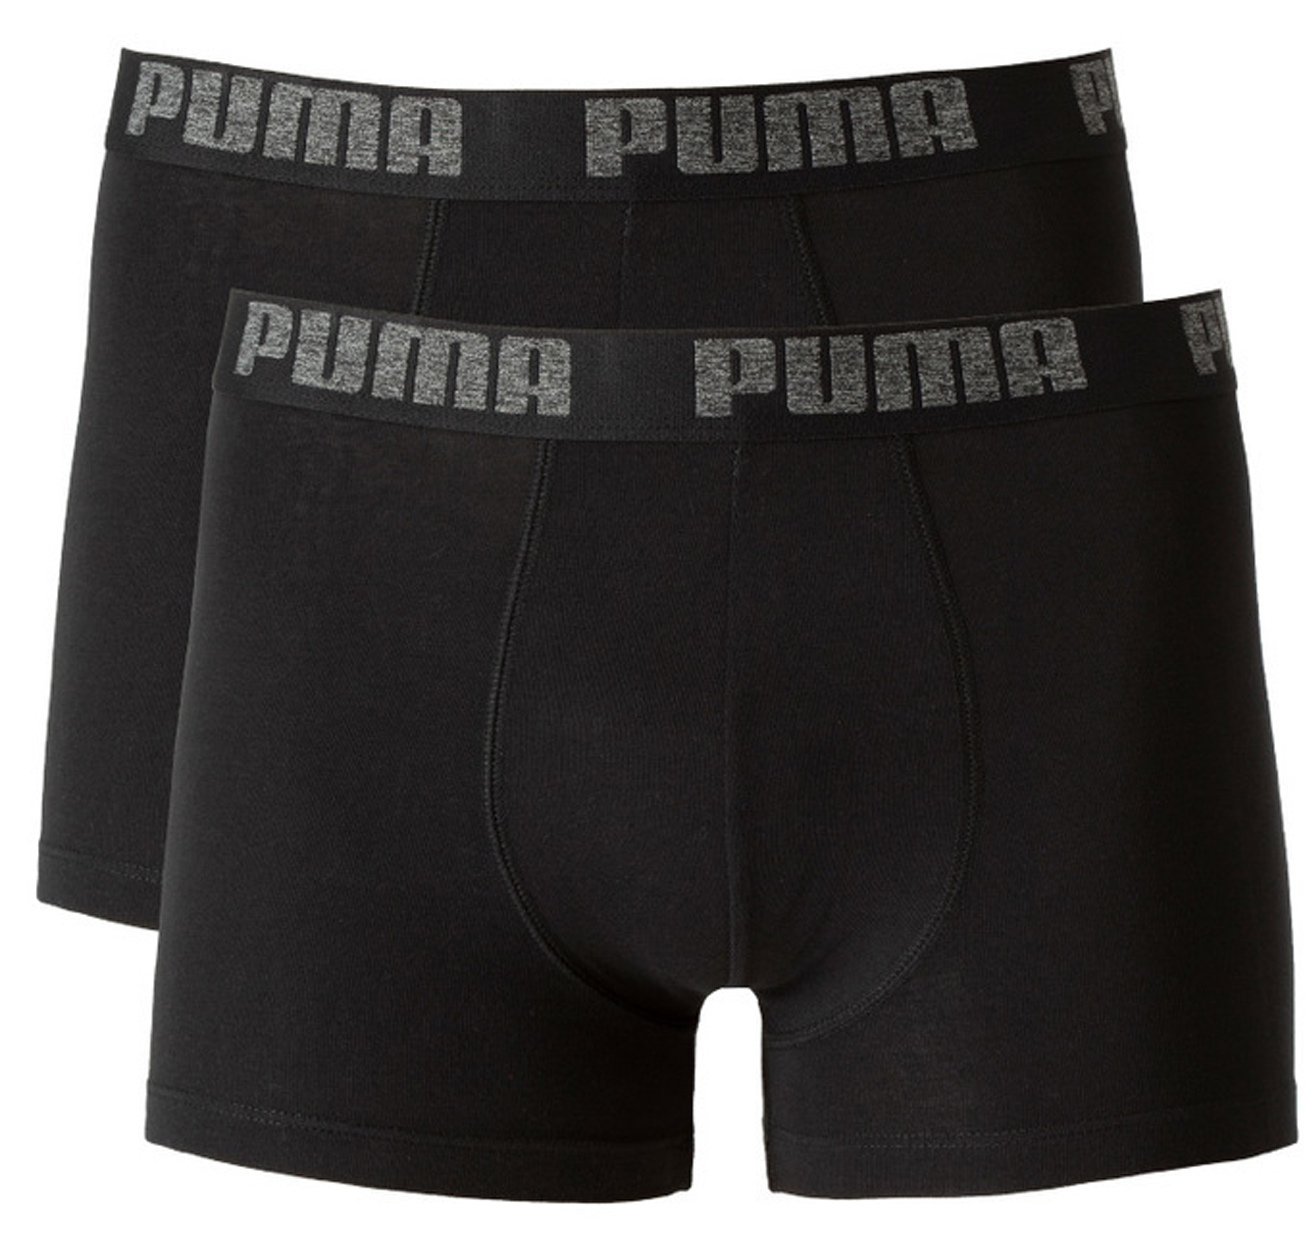 Pack 2 boxers Puma Negro/Negro - Peregrinoteca